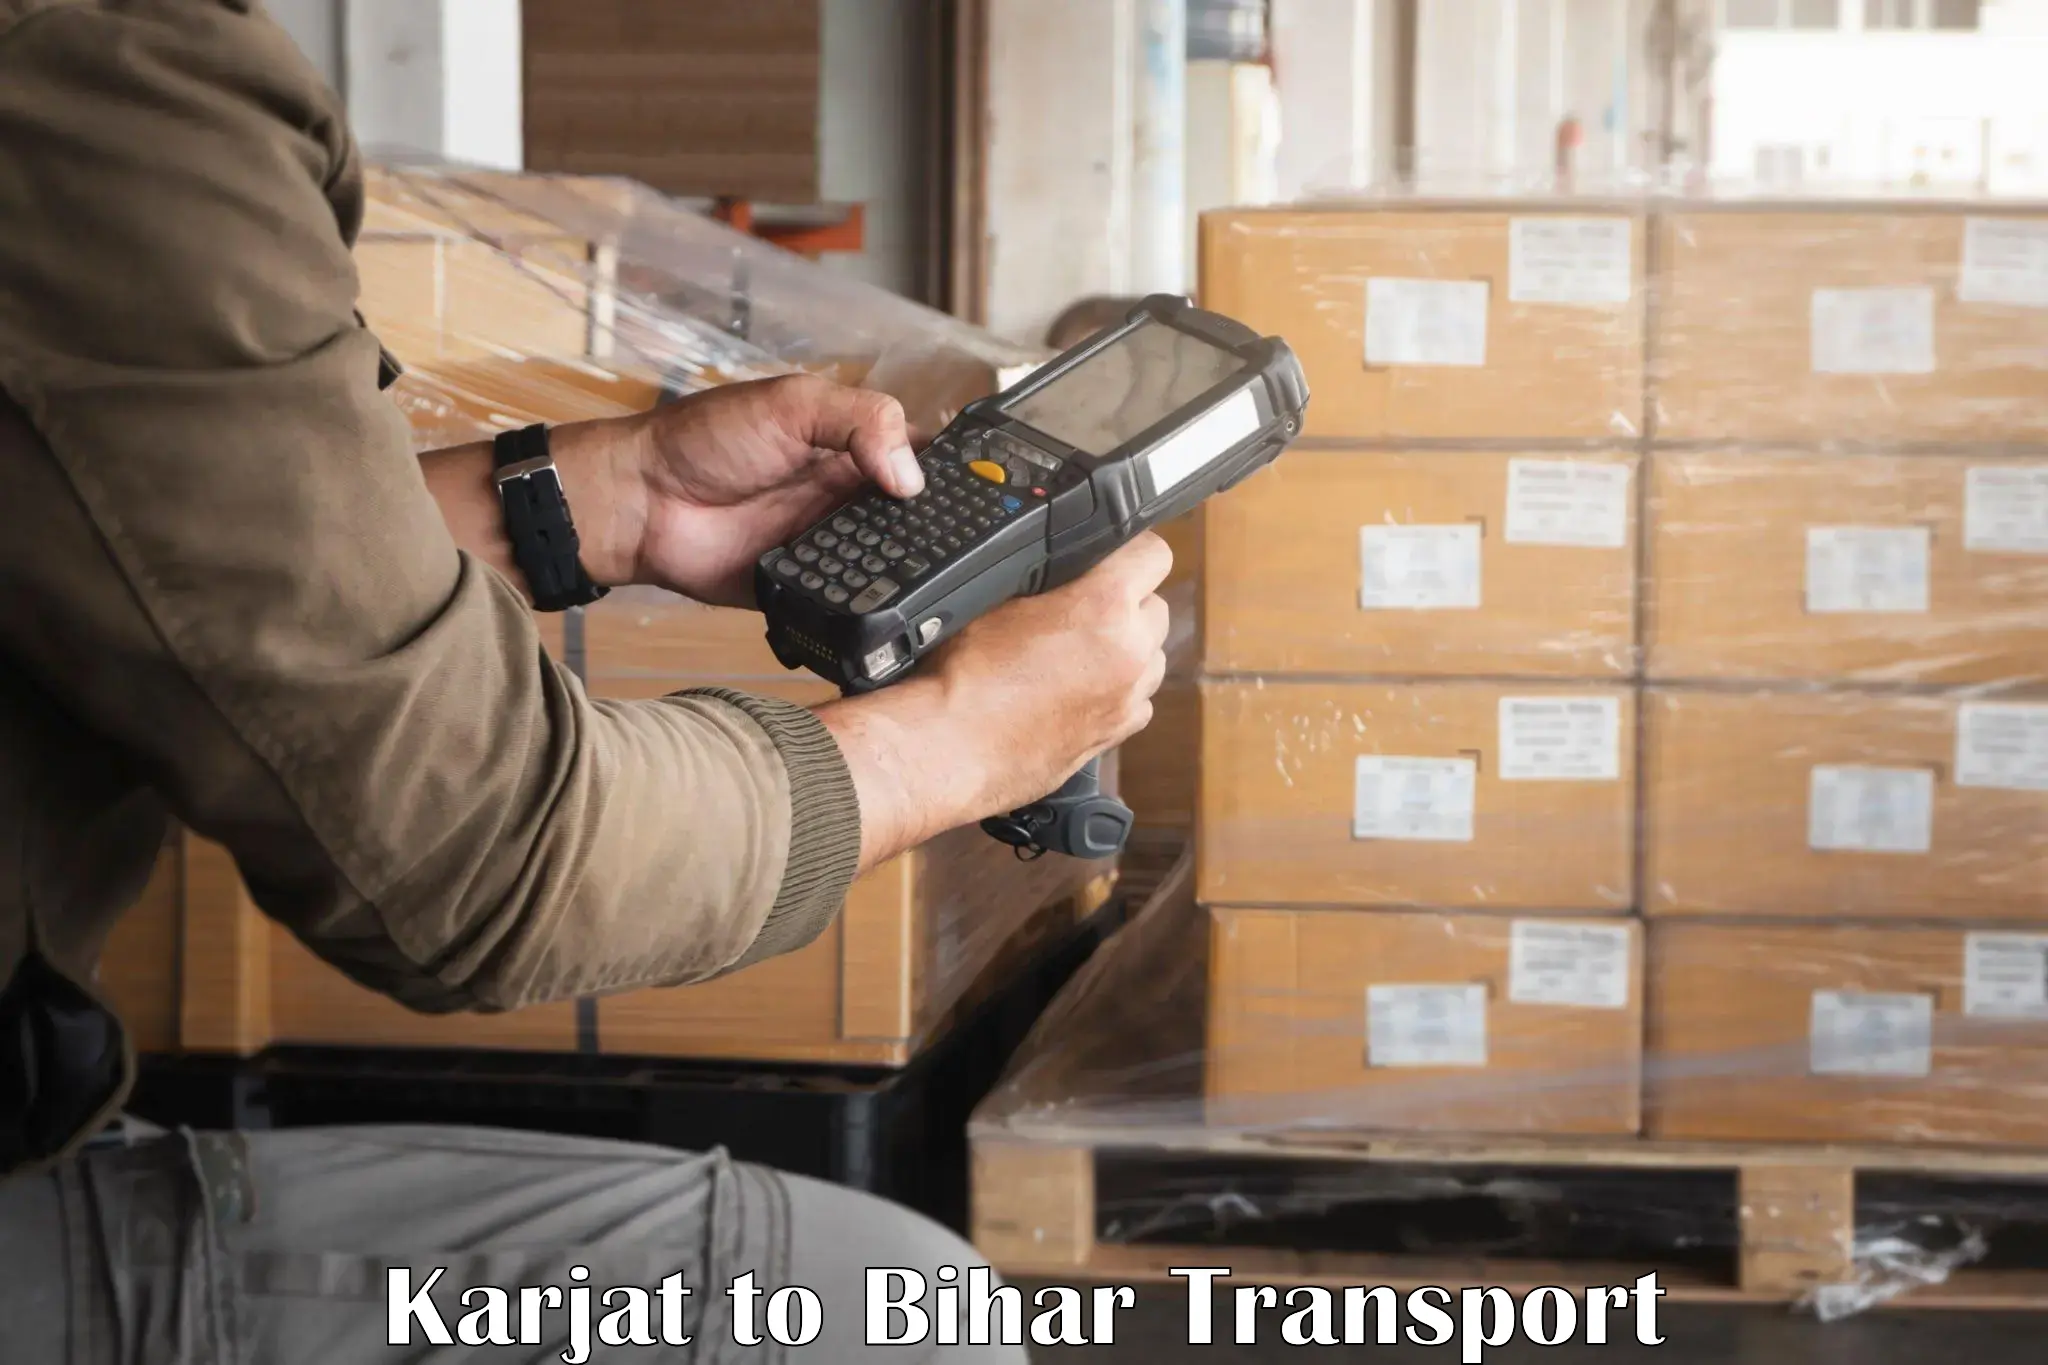 Package delivery services Karjat to Mashrakh